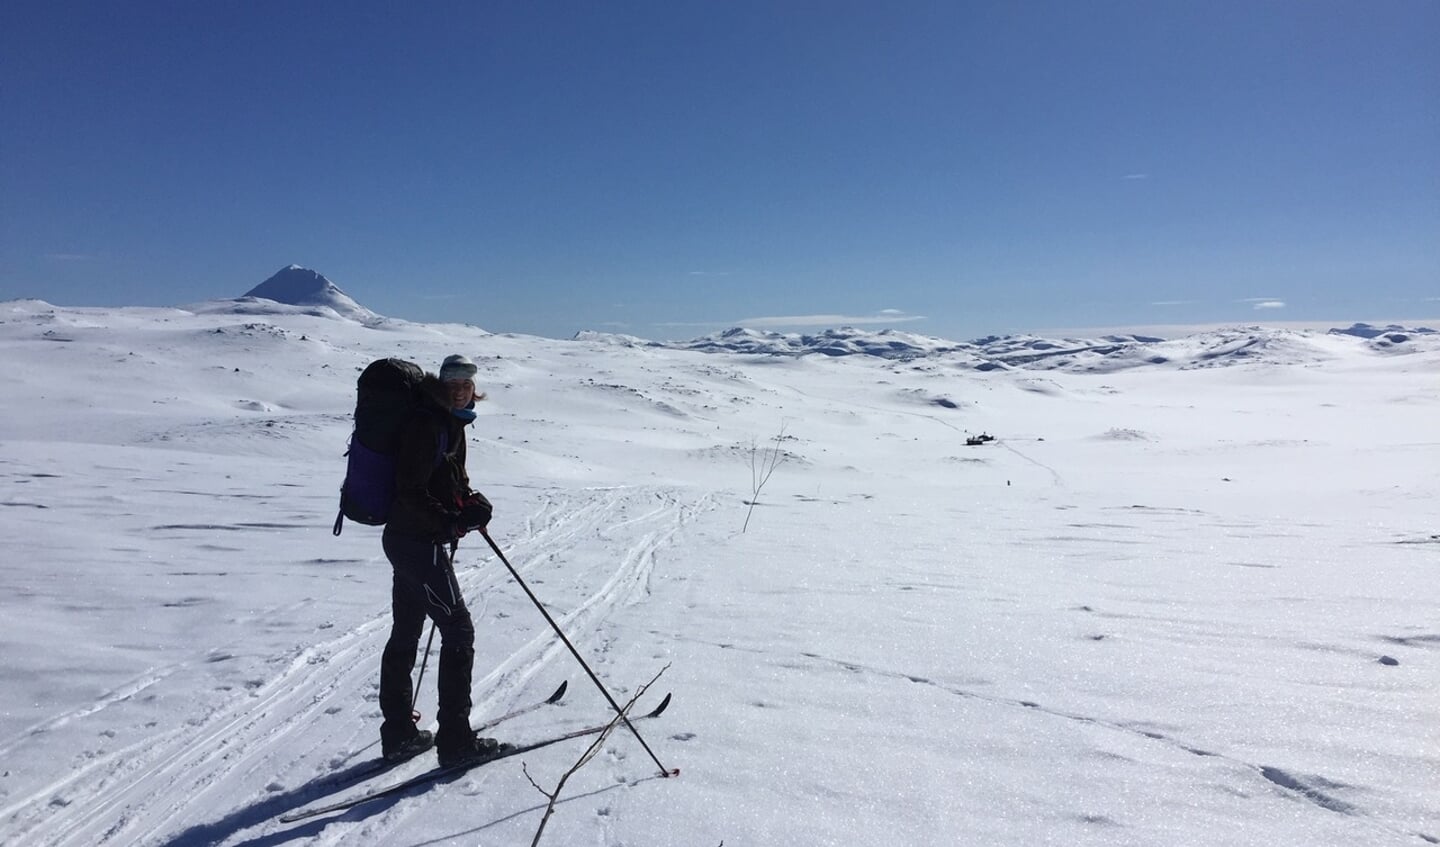 Langlauftocht van hut naar hut op de Hardangervidda in Noorwegen.